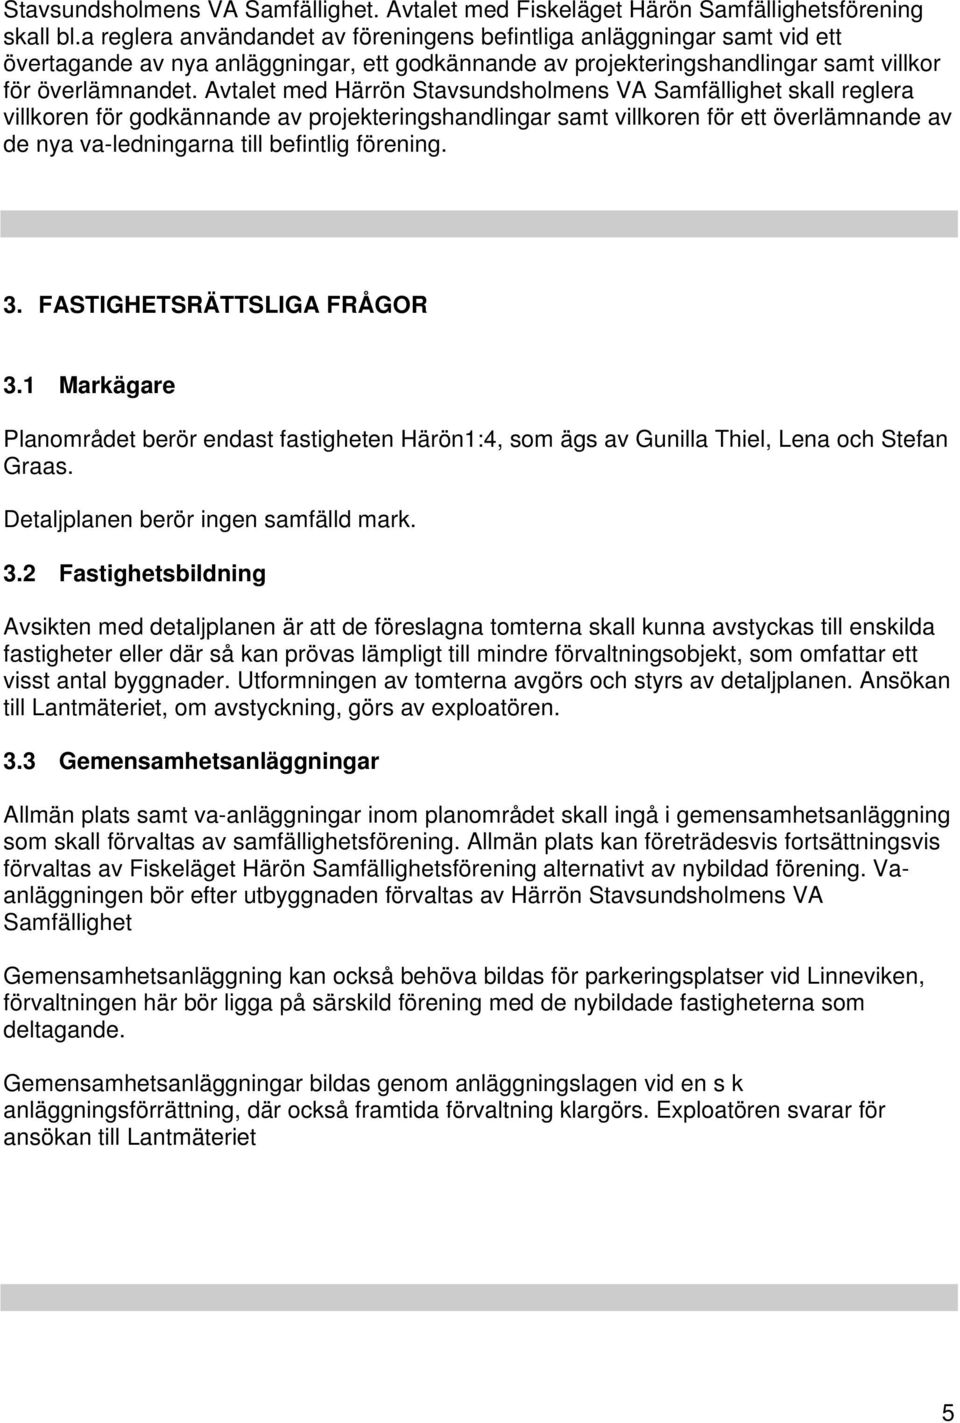 Avtalet med Härrön Stavsundsholmens VA Samfällighet skall reglera villkoren för godkännande av projekteringshandlingar samt villkoren för ett överlämnande av de nya va-ledningarna till befintlig